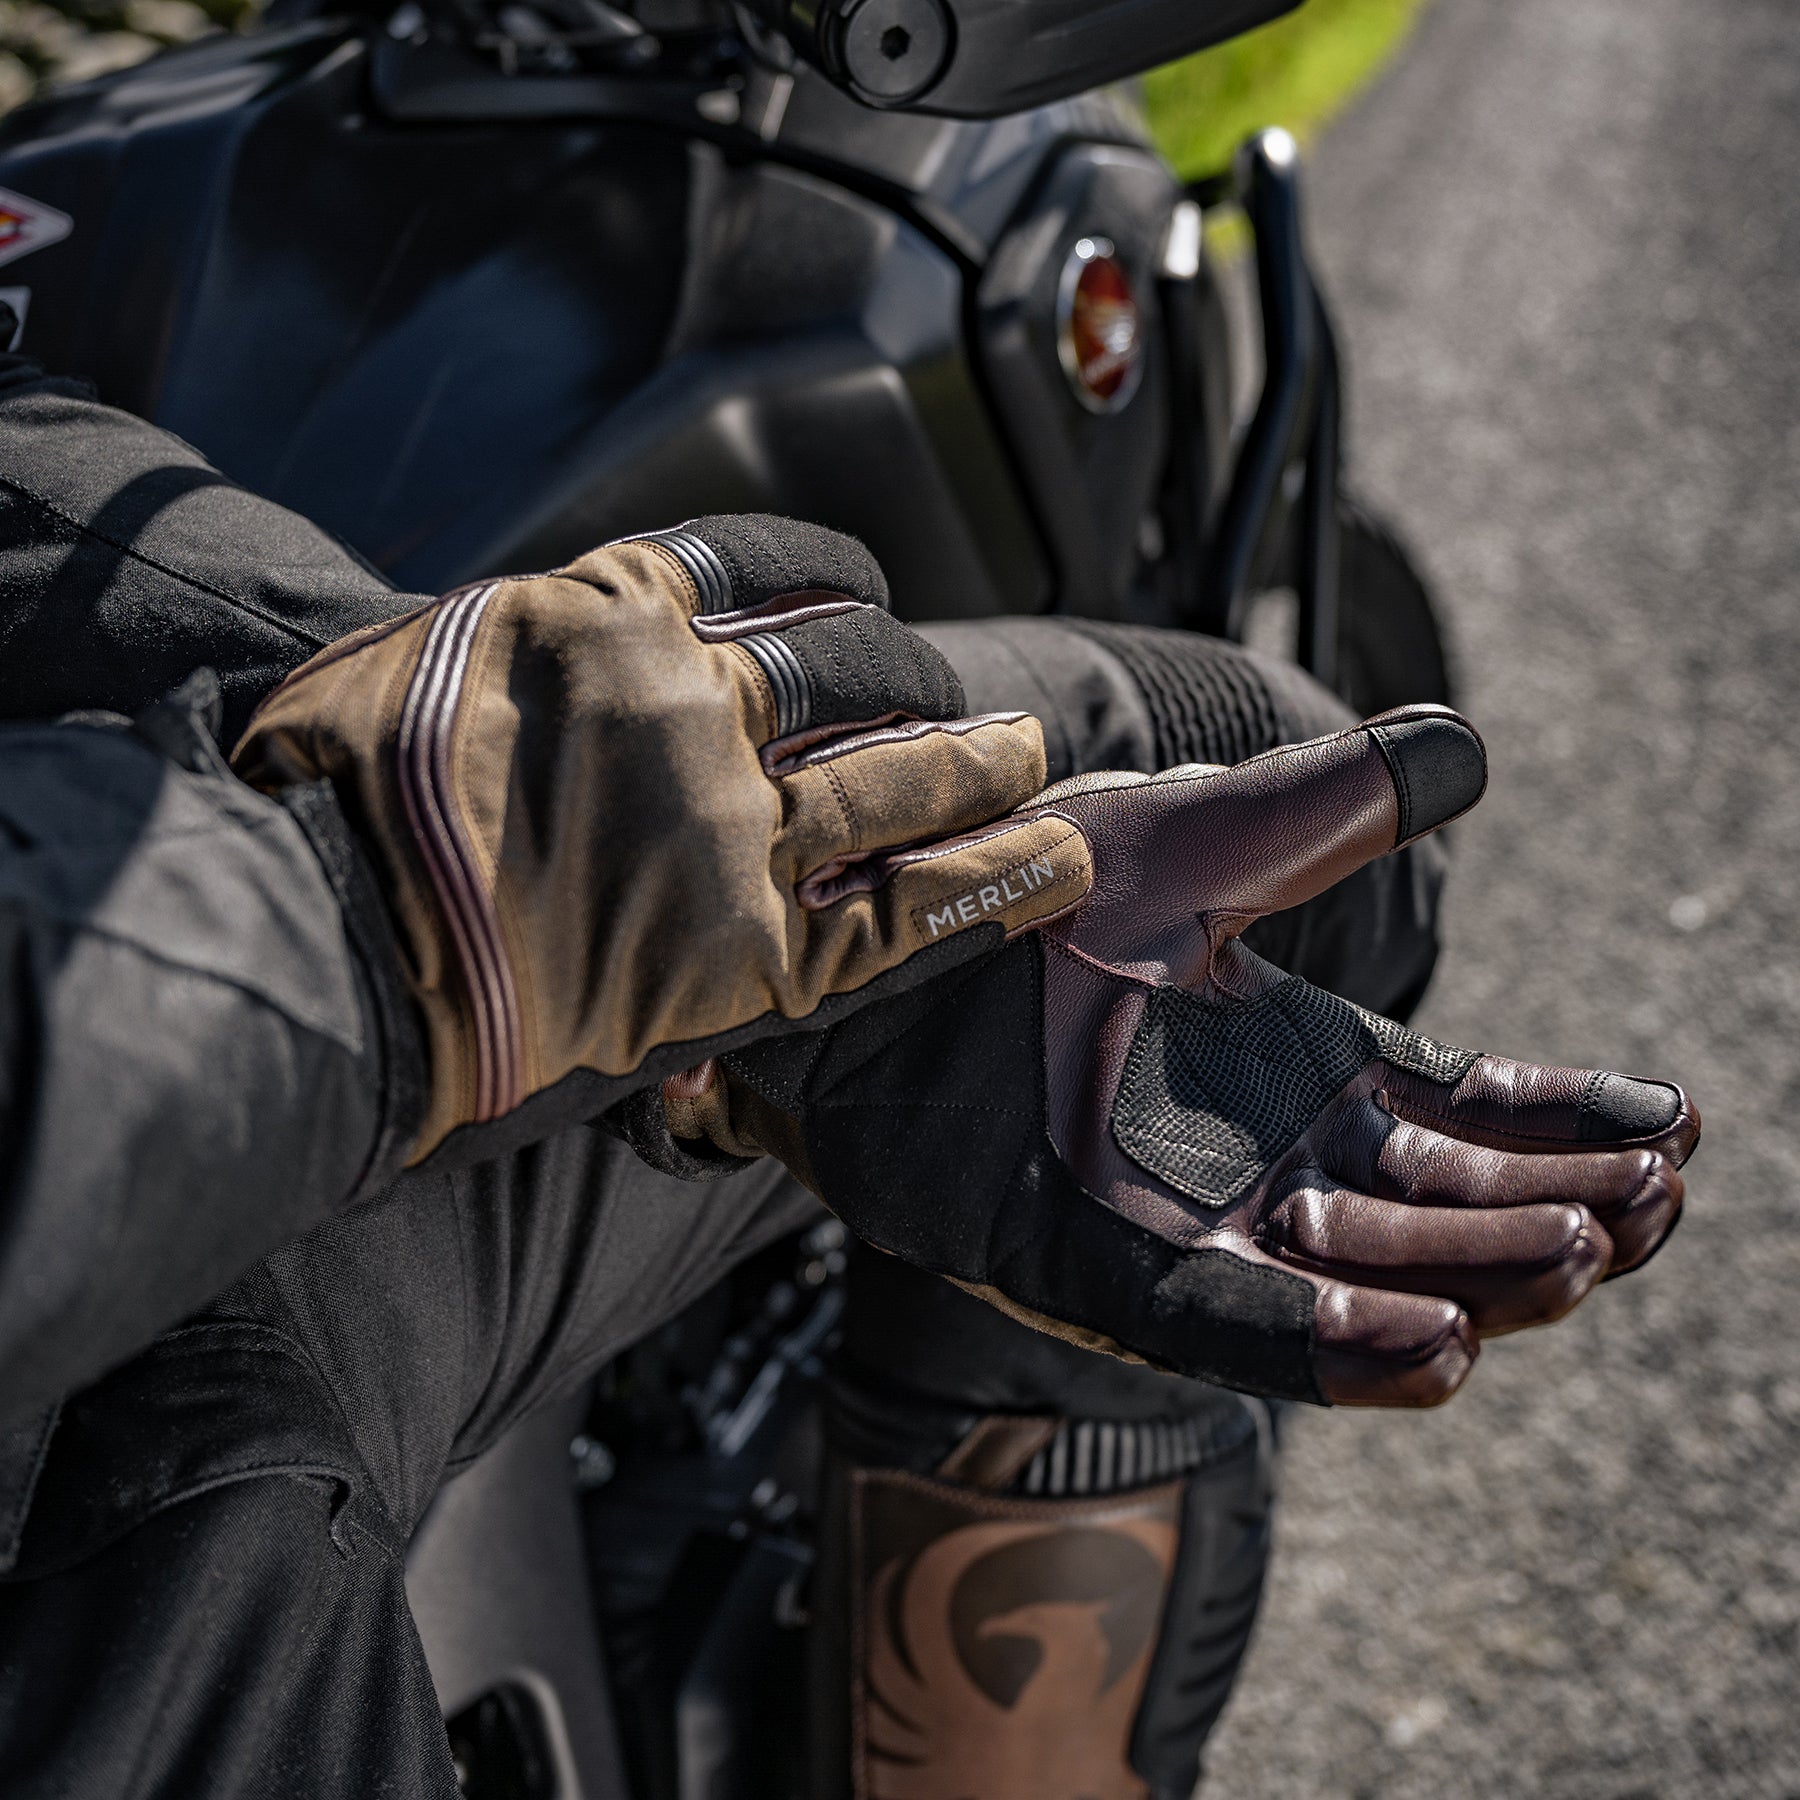 Ranger D3O® Waterproof Glove